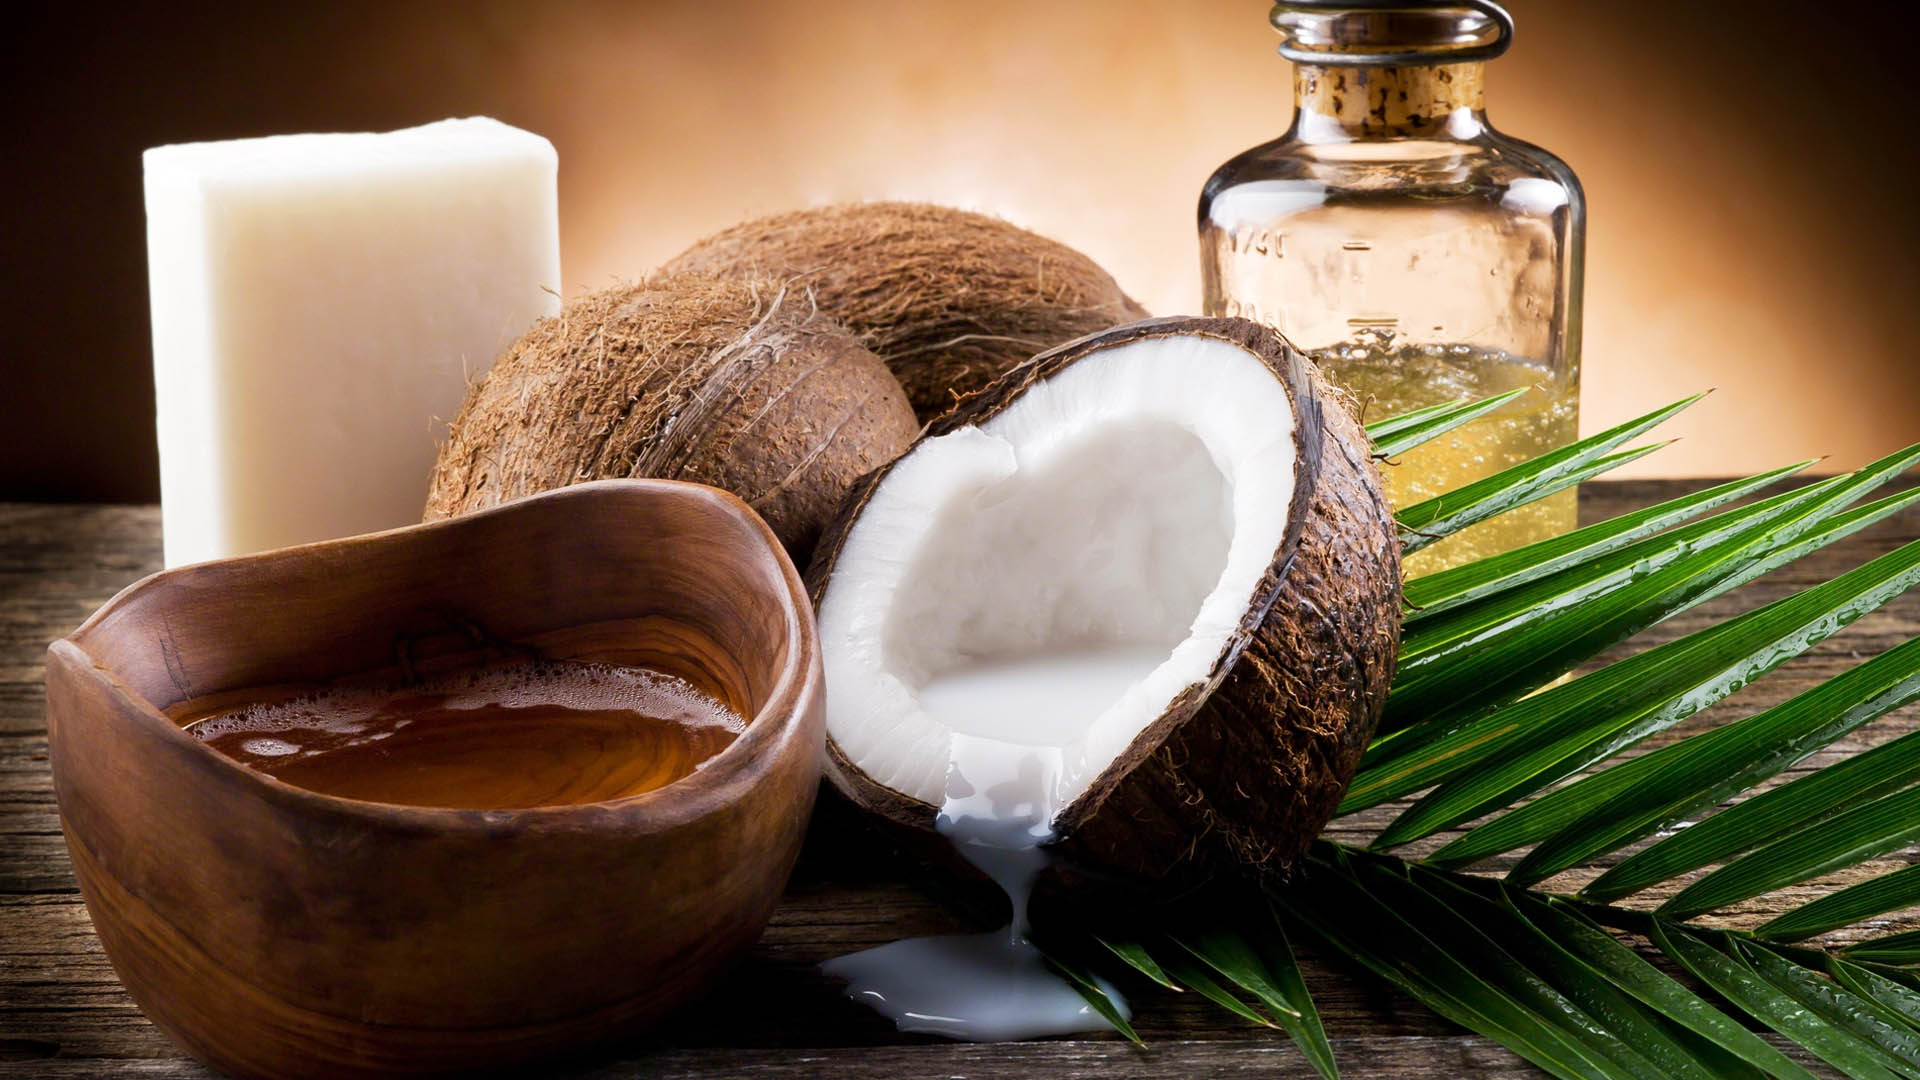 Применение кокосового масла для лица от морщин, прыщей и прочих проблем кожи, отзывы косметологов и применявших средство